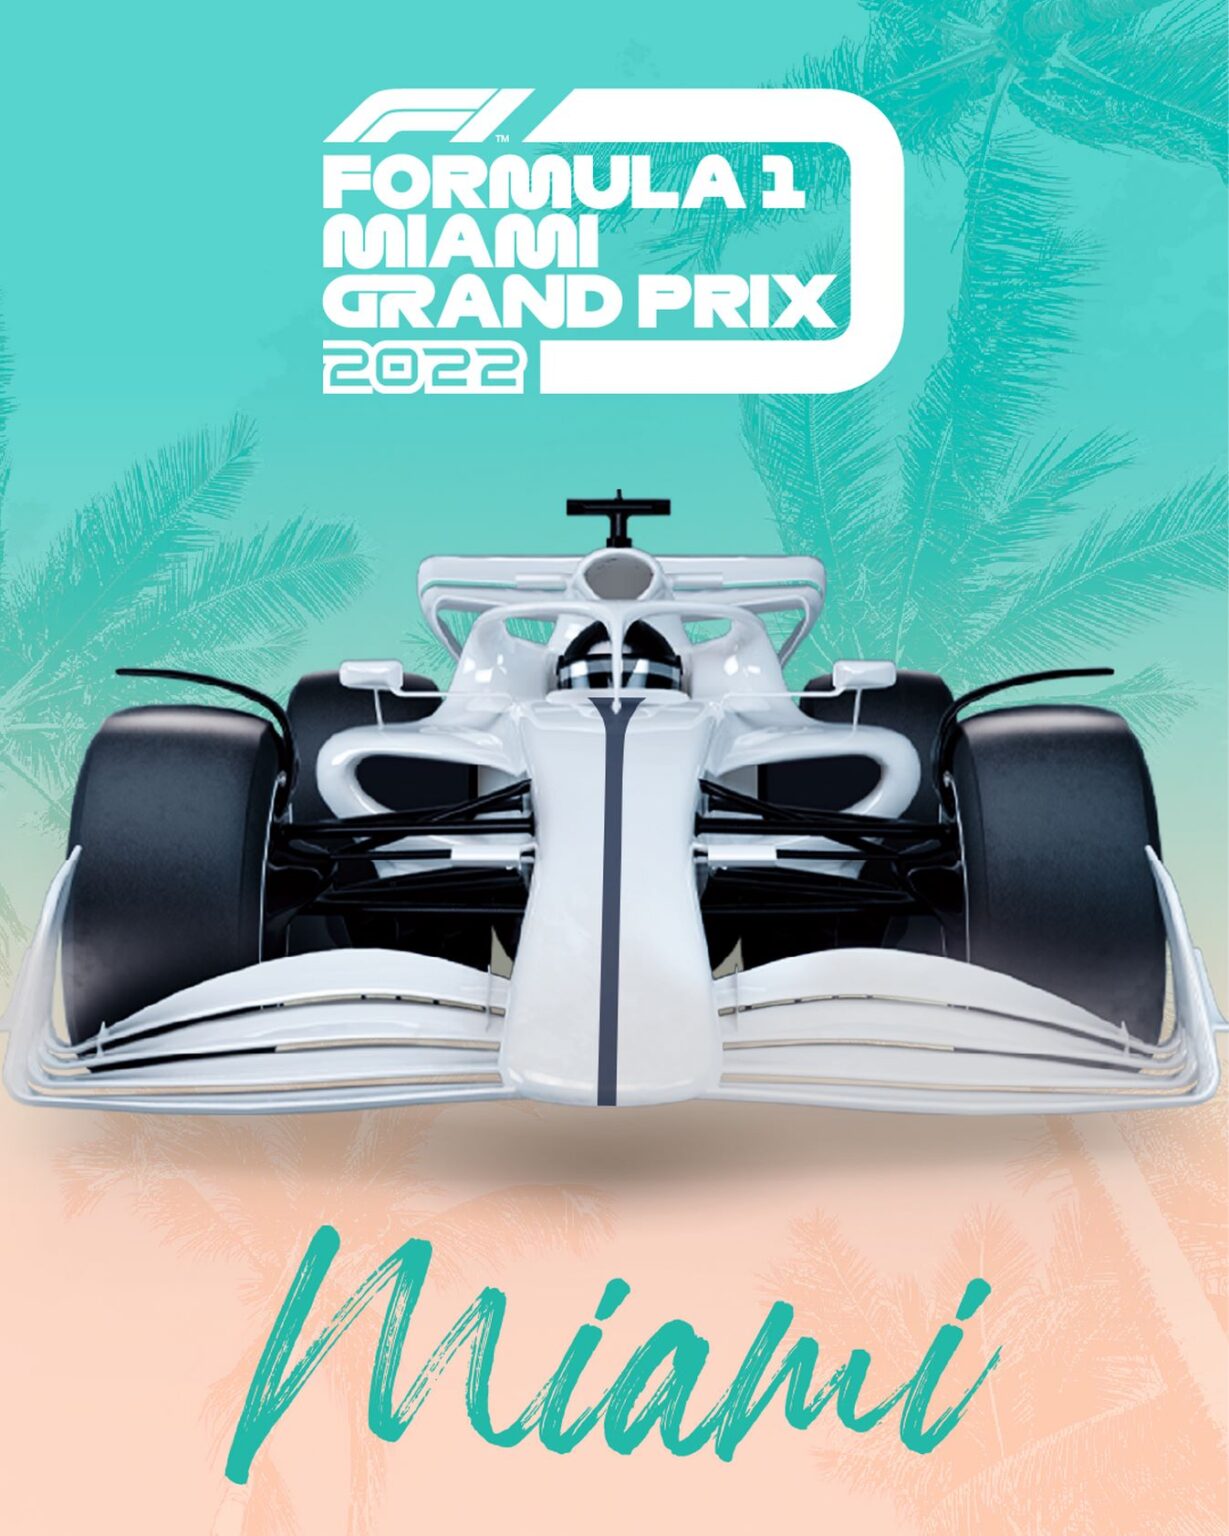 Le Grand Prix de Miami arrive au calendrier 2022